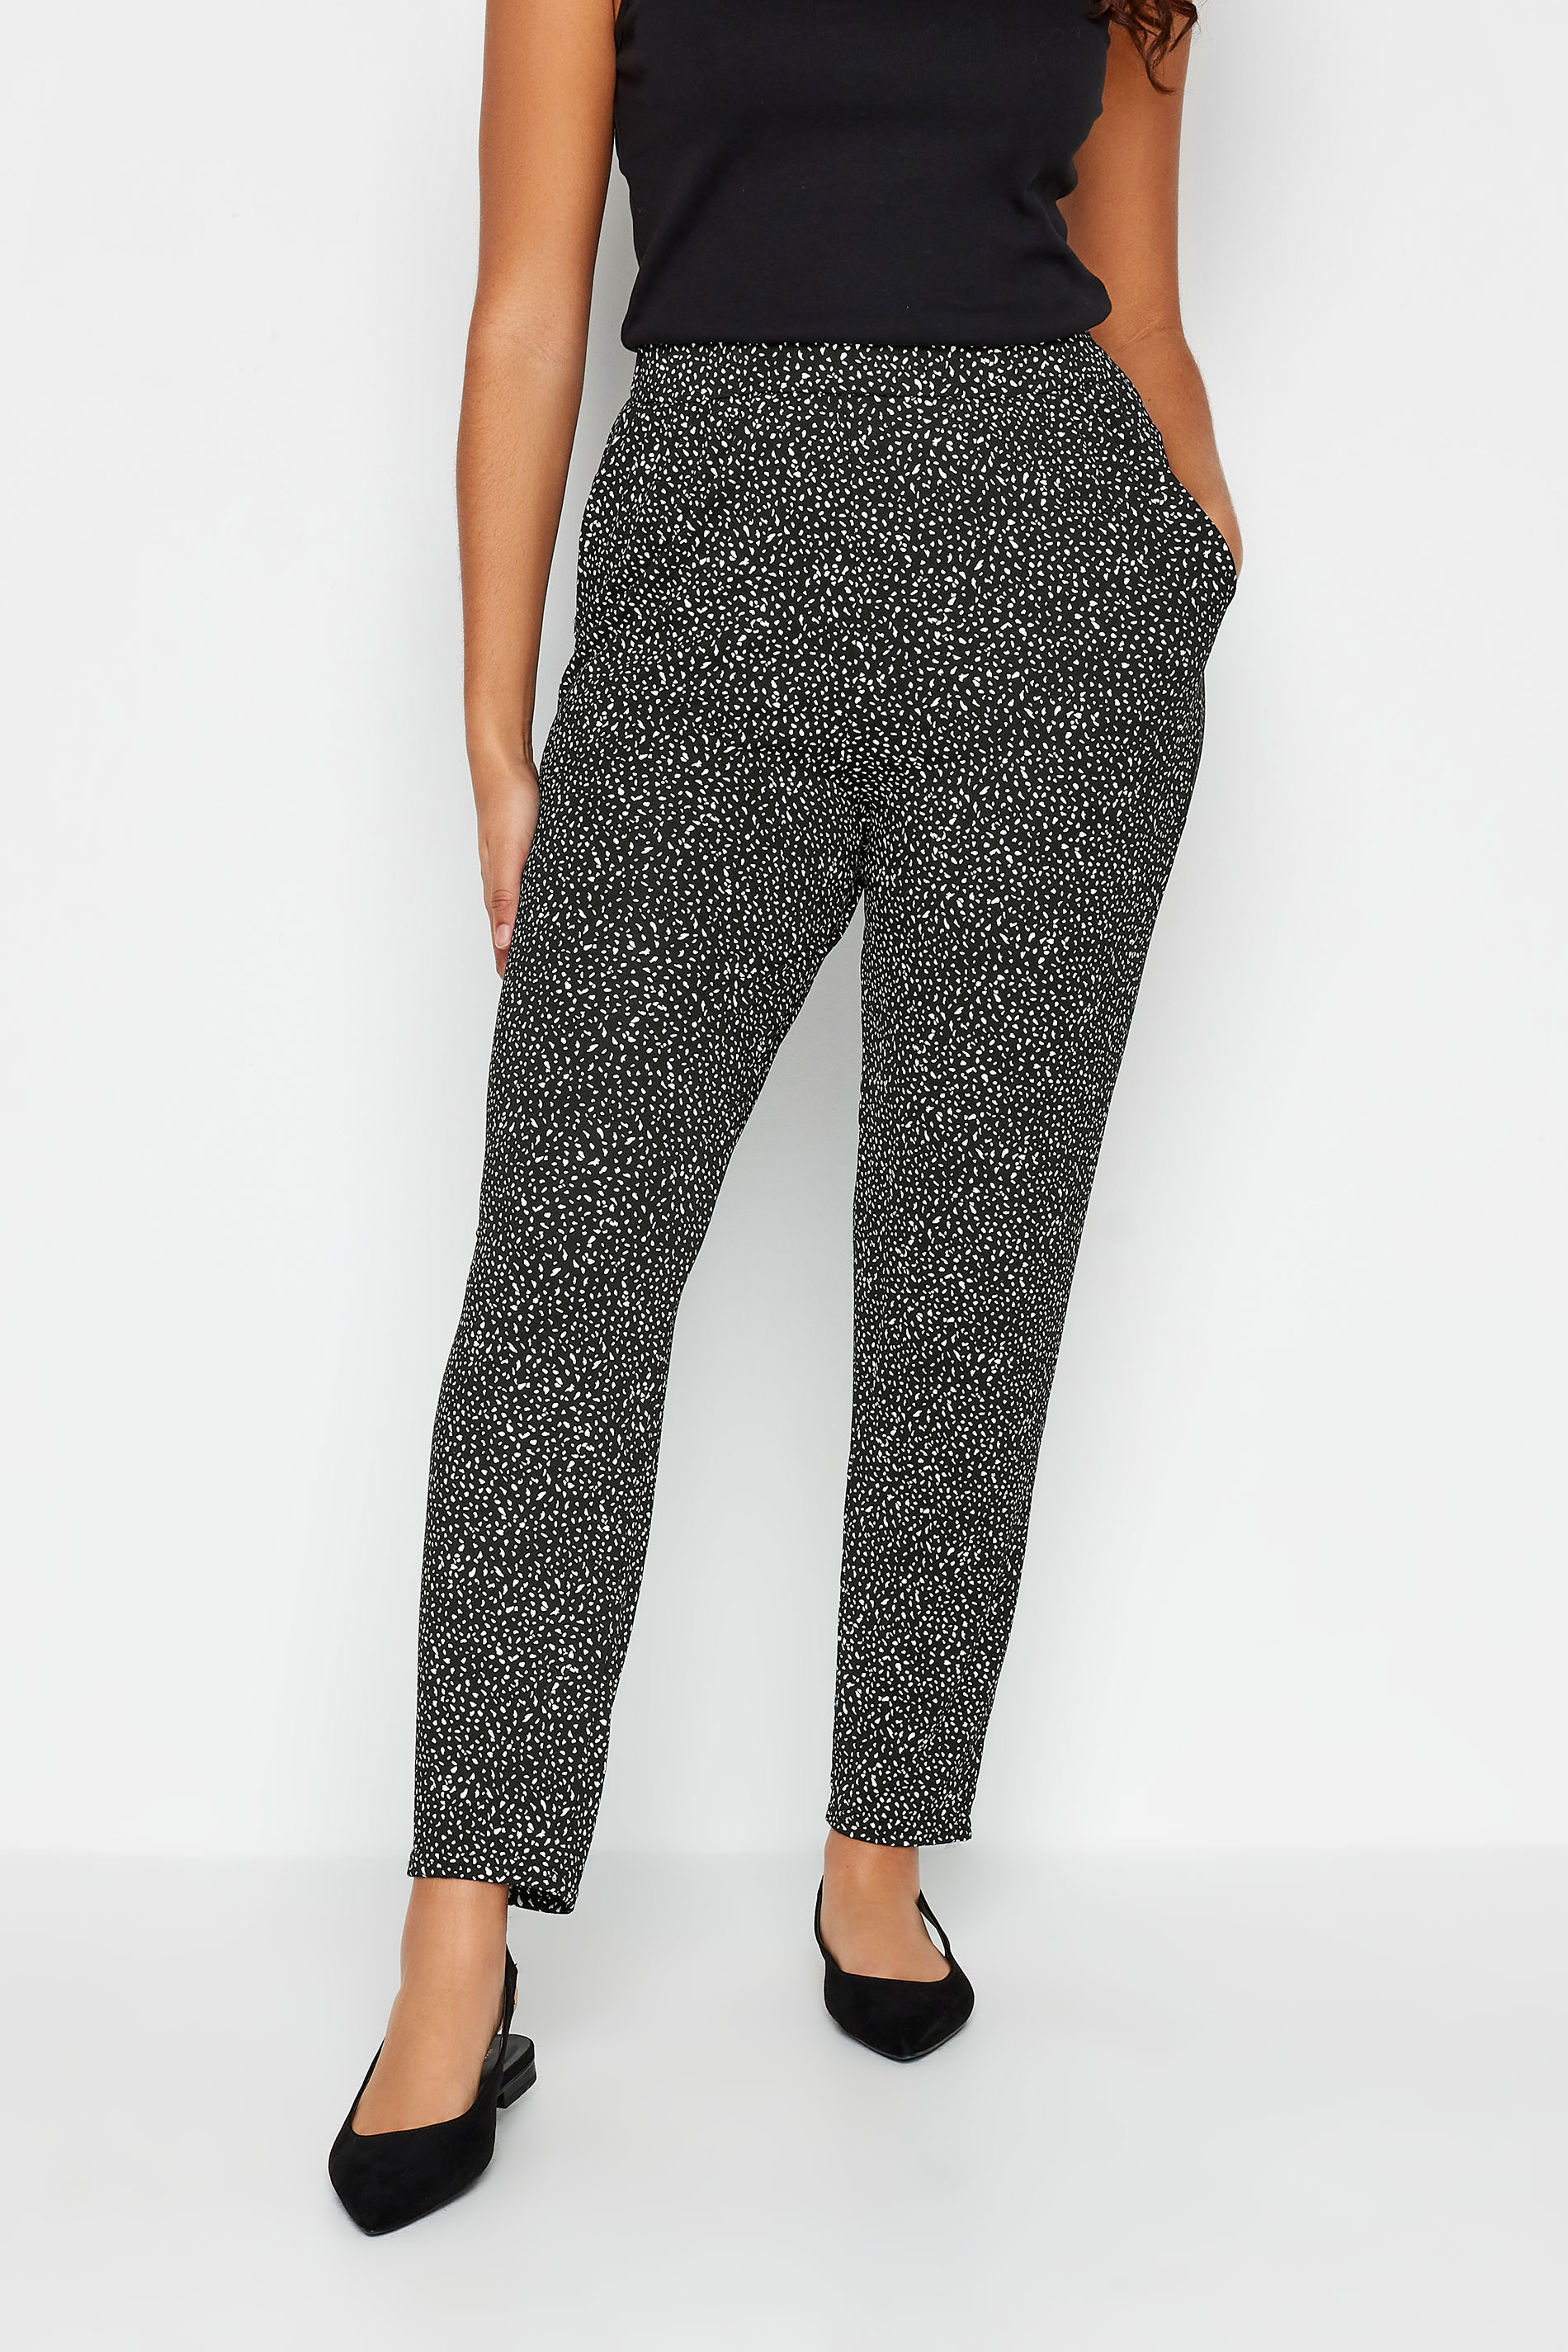 M&Co Black Spot Print Harem Trousers | M&Co